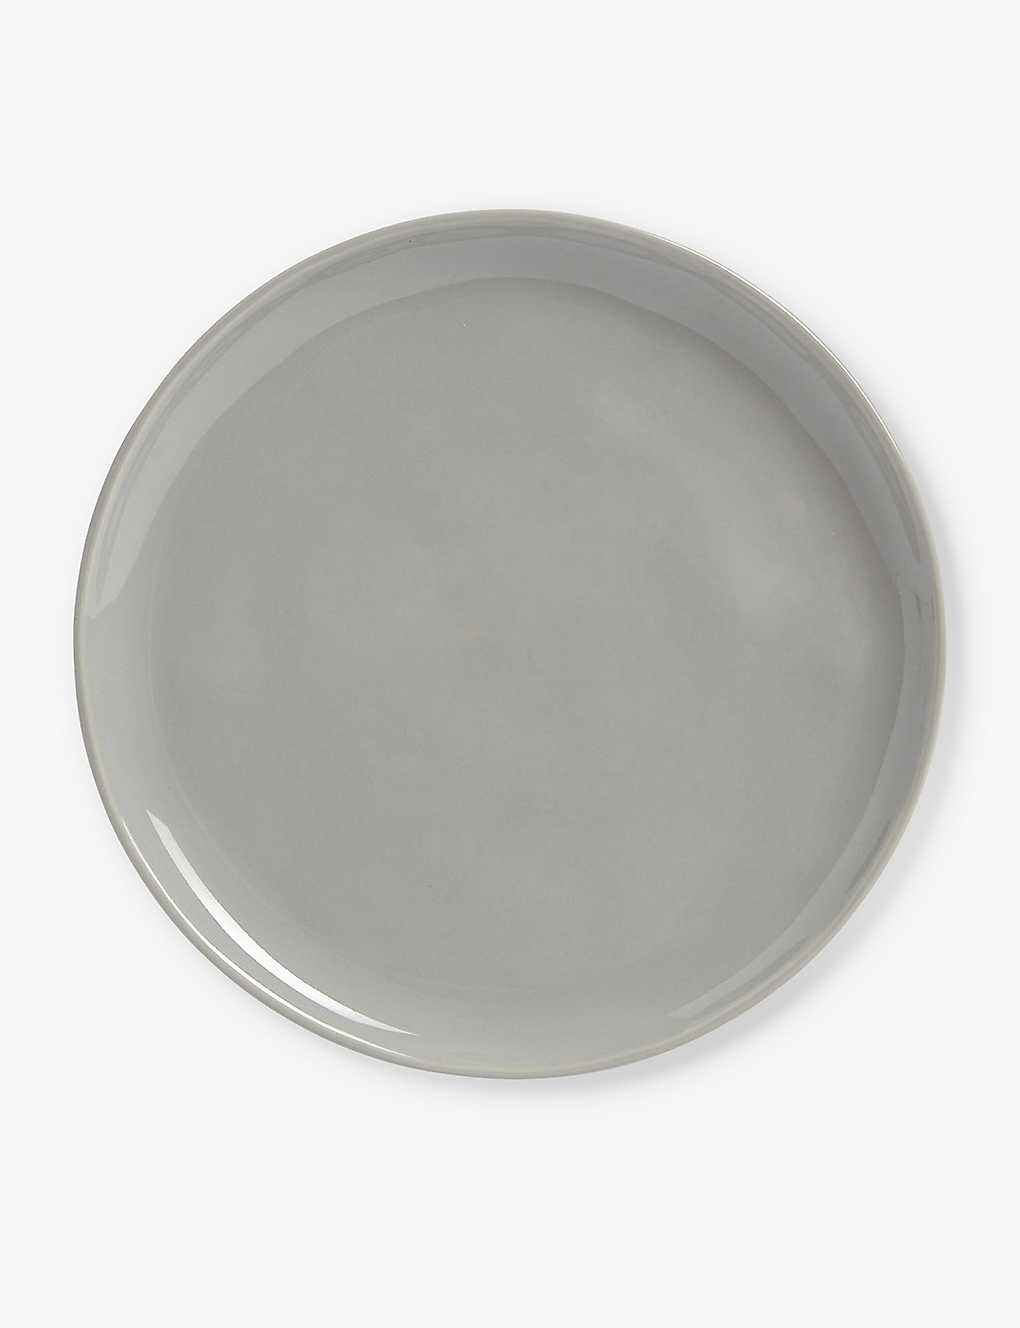 The White Company Portobello Side Plate In Grey